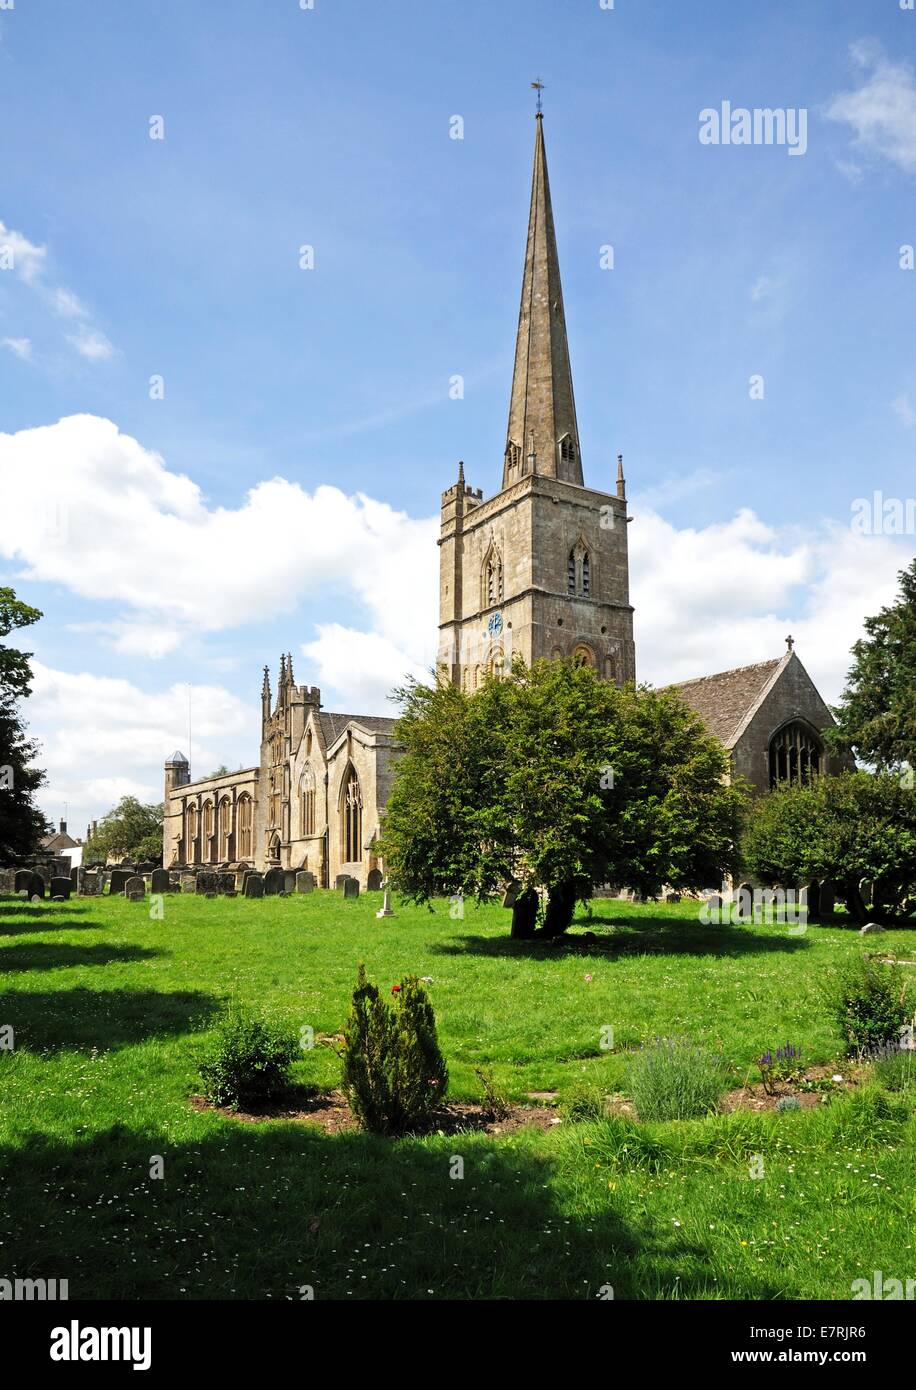 St John the Baptist church, Burford, Oxfordshire, England, UK, Western Europe. Stock Photo